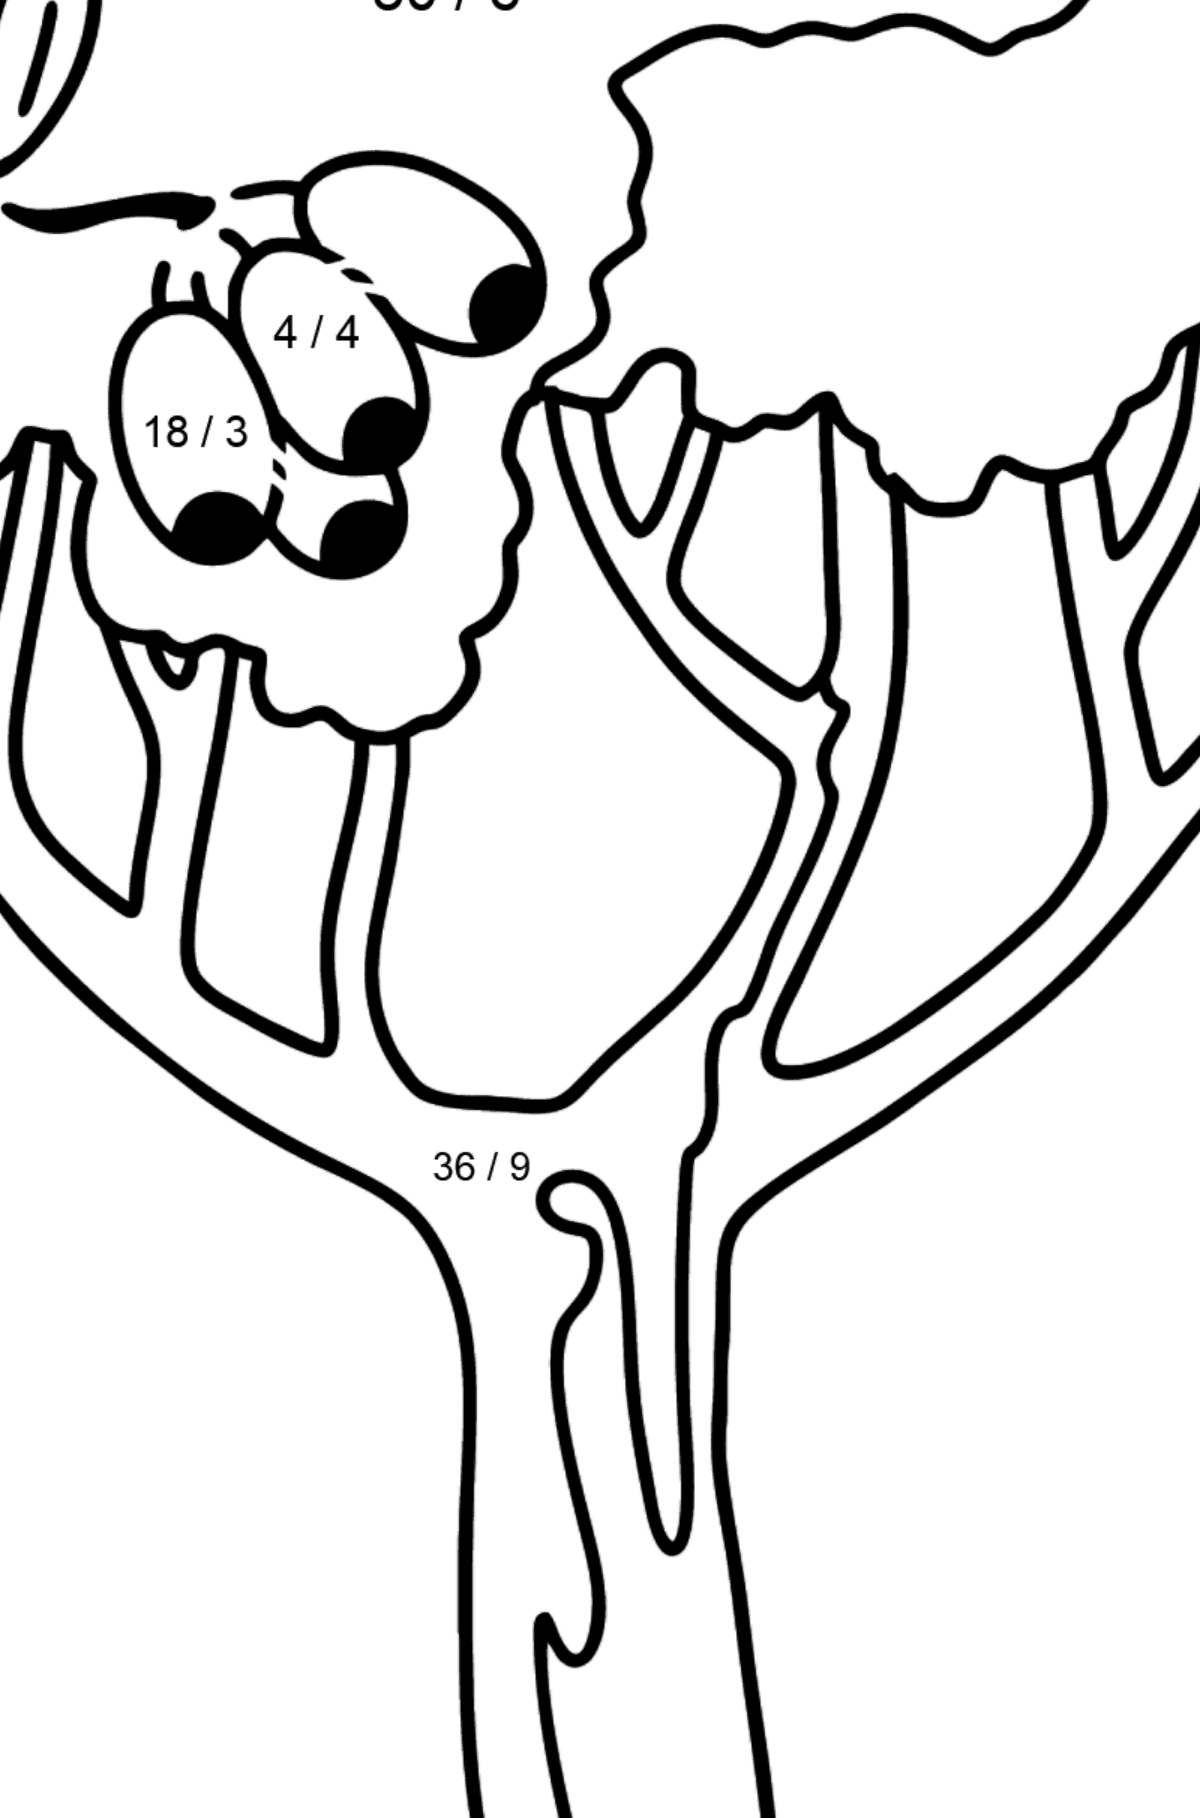 Mewarnai gambar pohon karet - Corimbia - Pewarnaan Matematika: Pembagian untuk anak-anak